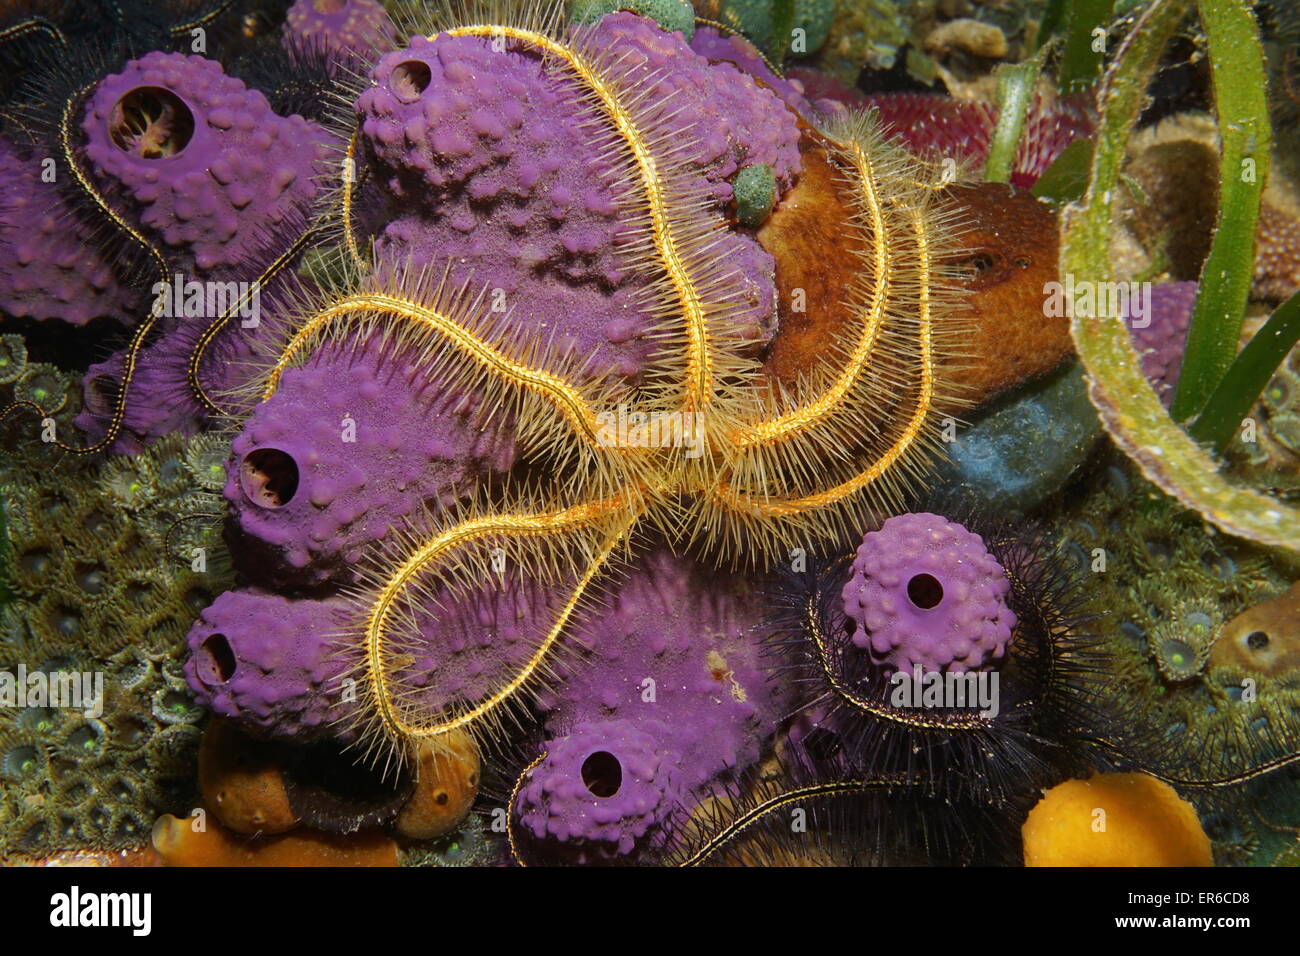 Underwater creature, a Suenson's brittle star, Ophiothrix suensoni, over branching tube sponge, Caribbean sea Stock Photo